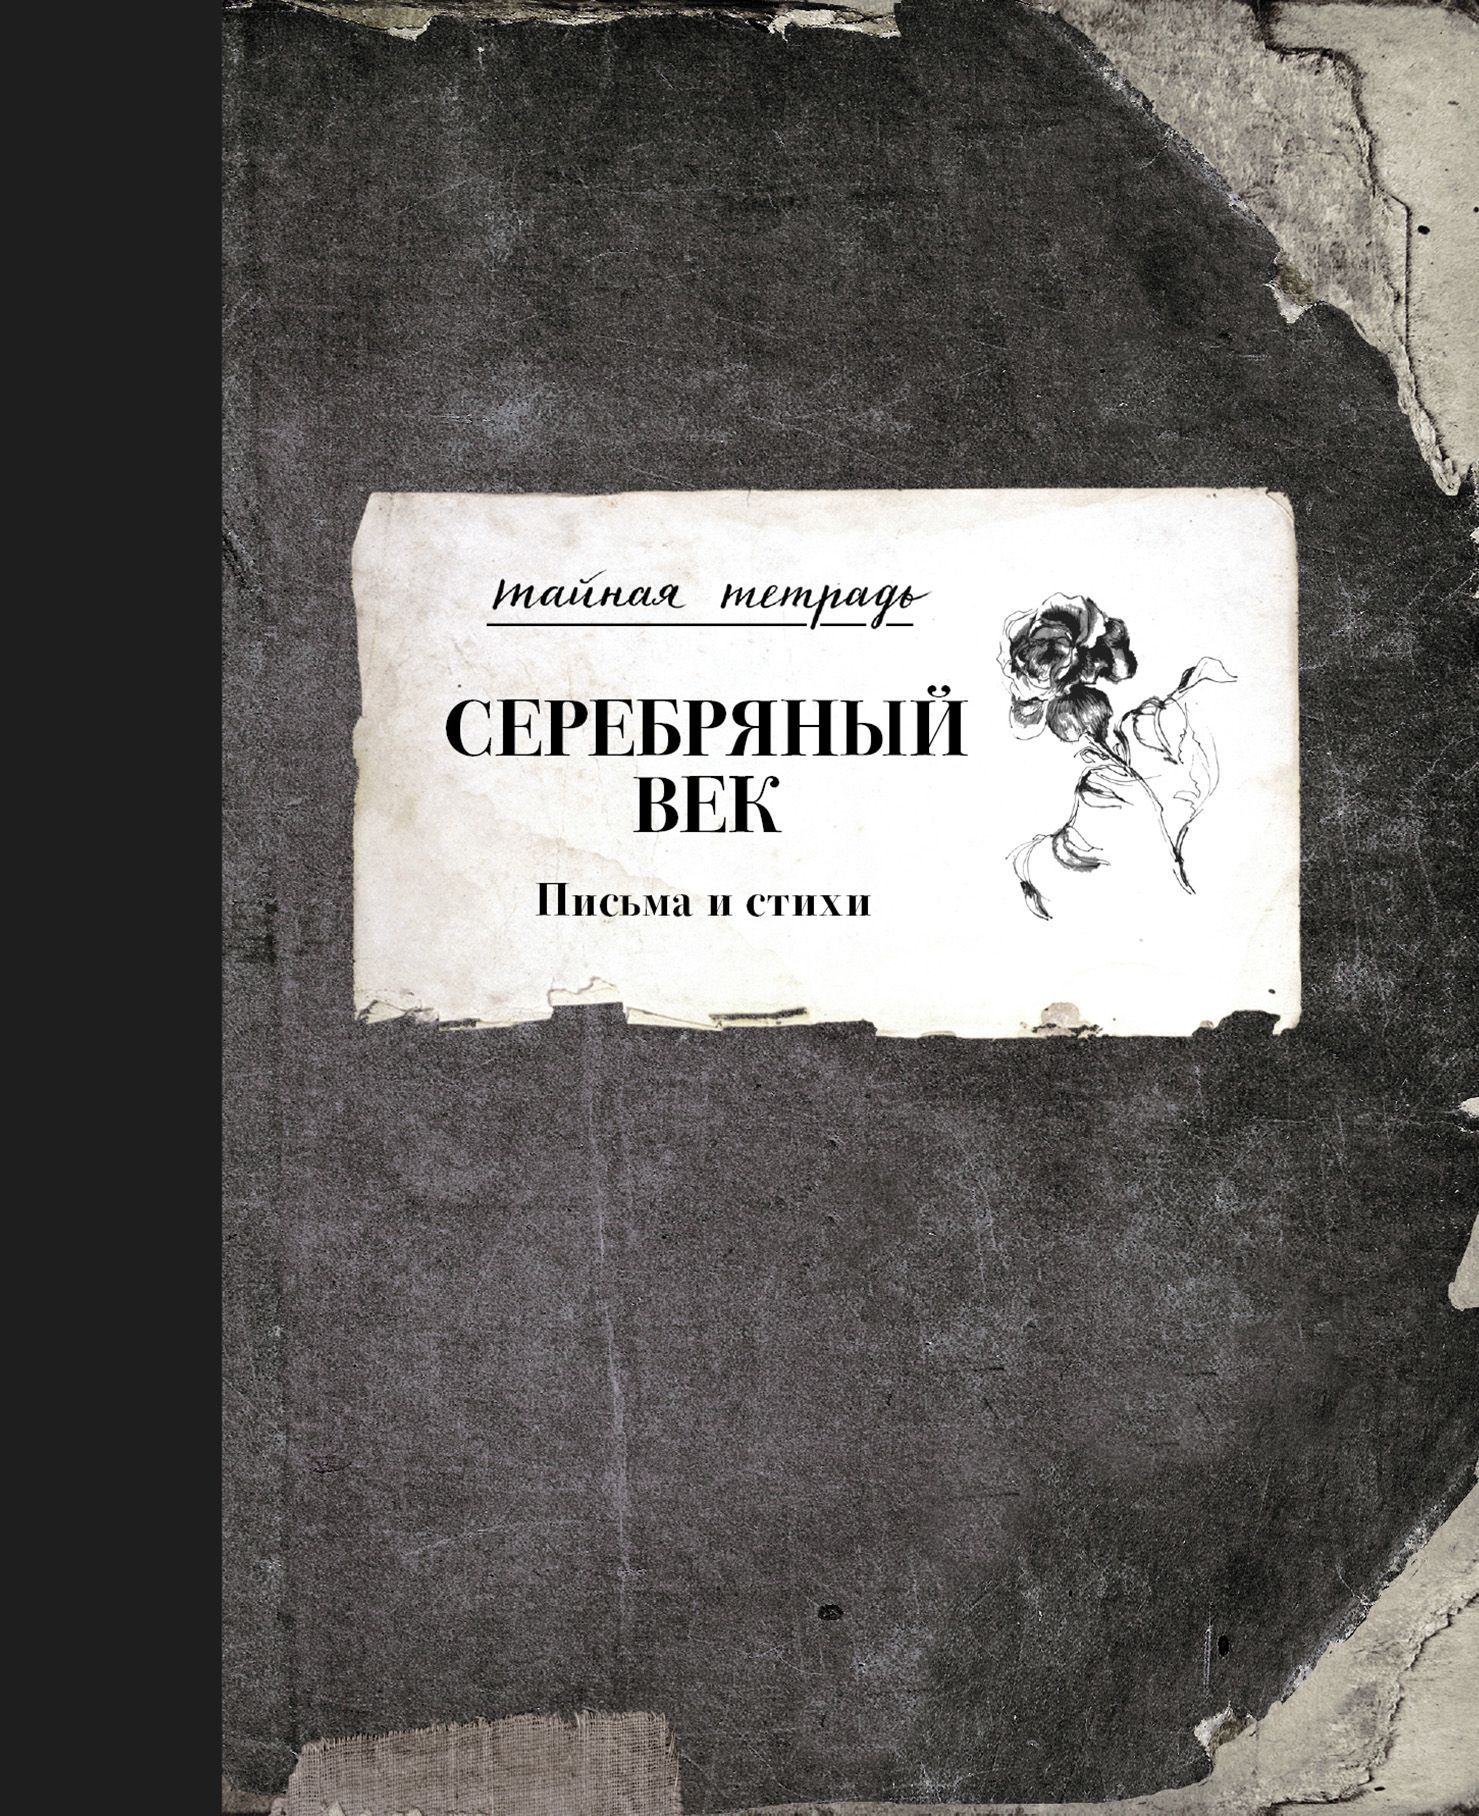 Сочинение: Николай Степанович Гумилев и эпоха Серебряного века